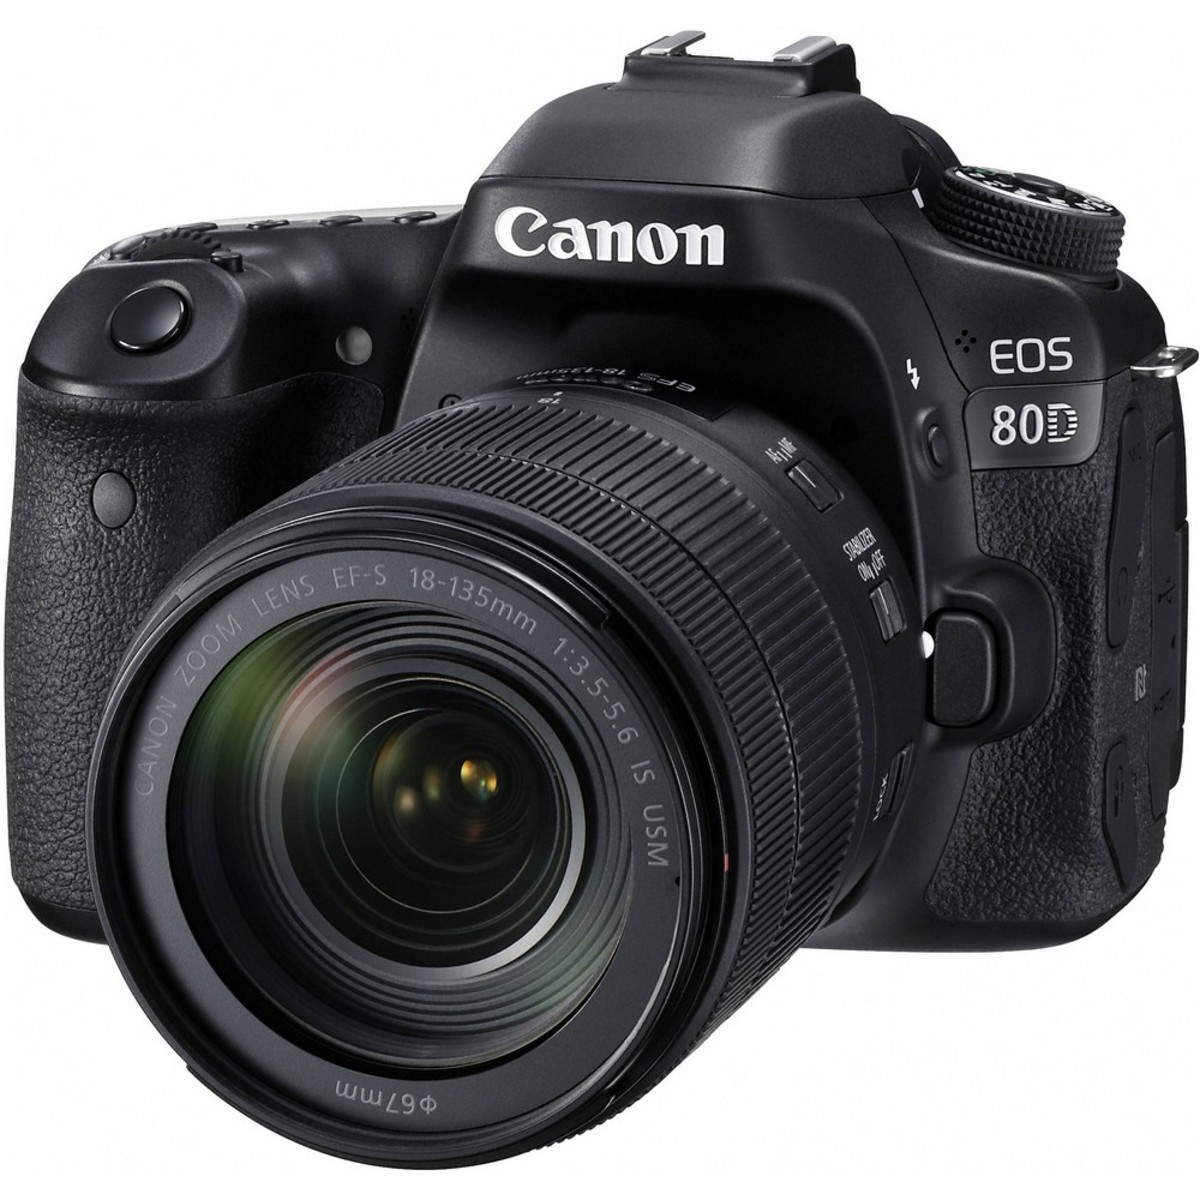 Dslr saudi arabia in canon camera price Canon EOS